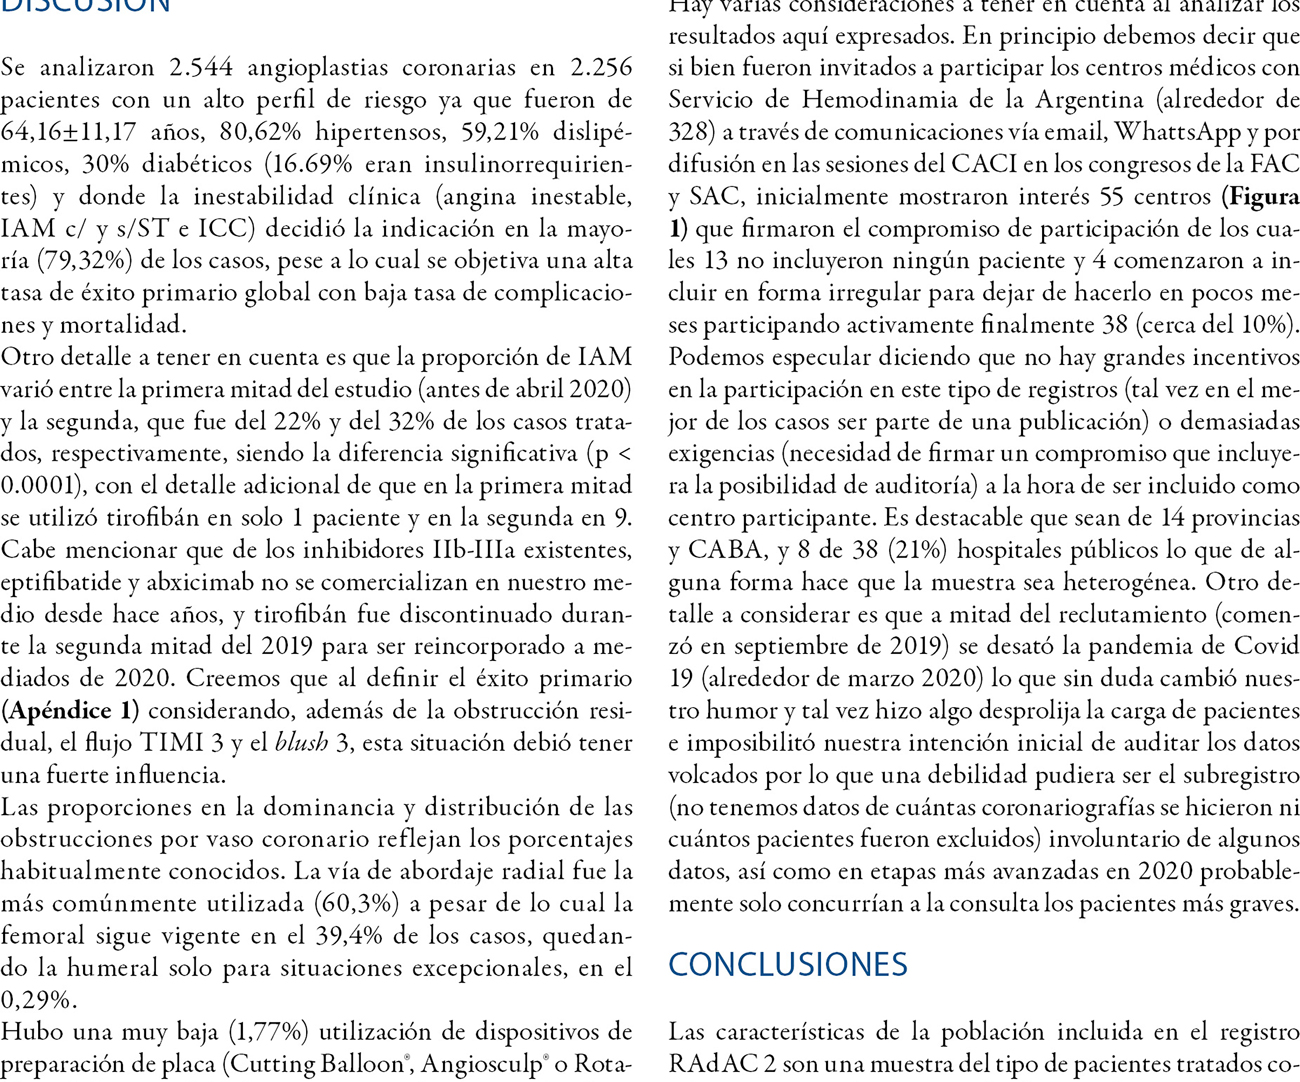 Registro Argentino de Angioplastia Coronaria 2 (RAdAC 2). Resultados iniciales